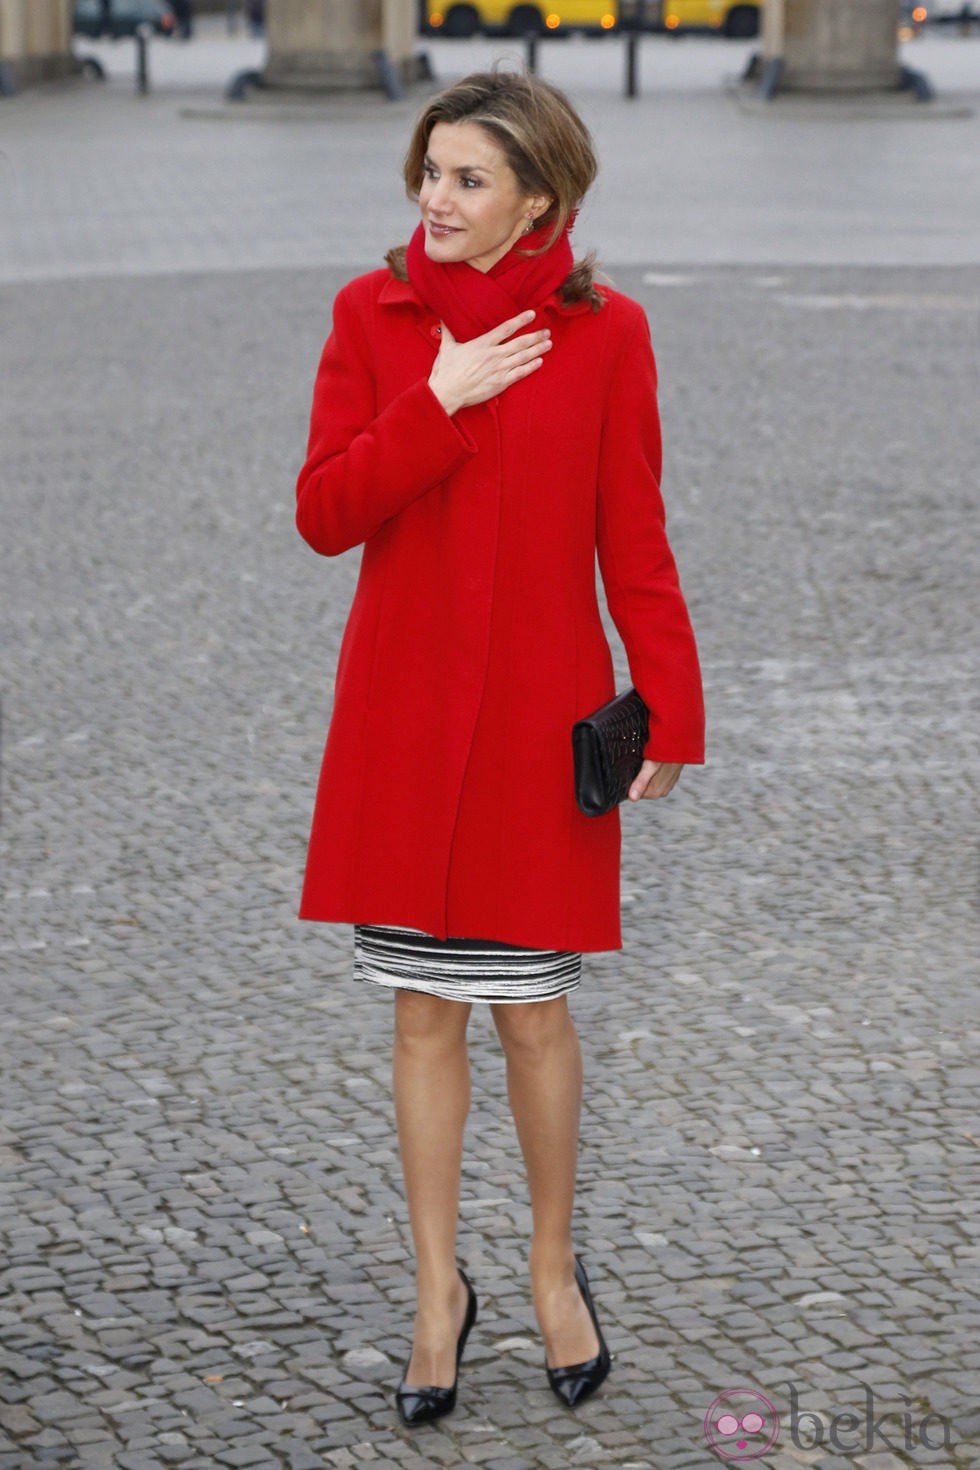 La Reina Letizia en la puerta de Brandeburgo en su primer viaje a Alemania como Reina